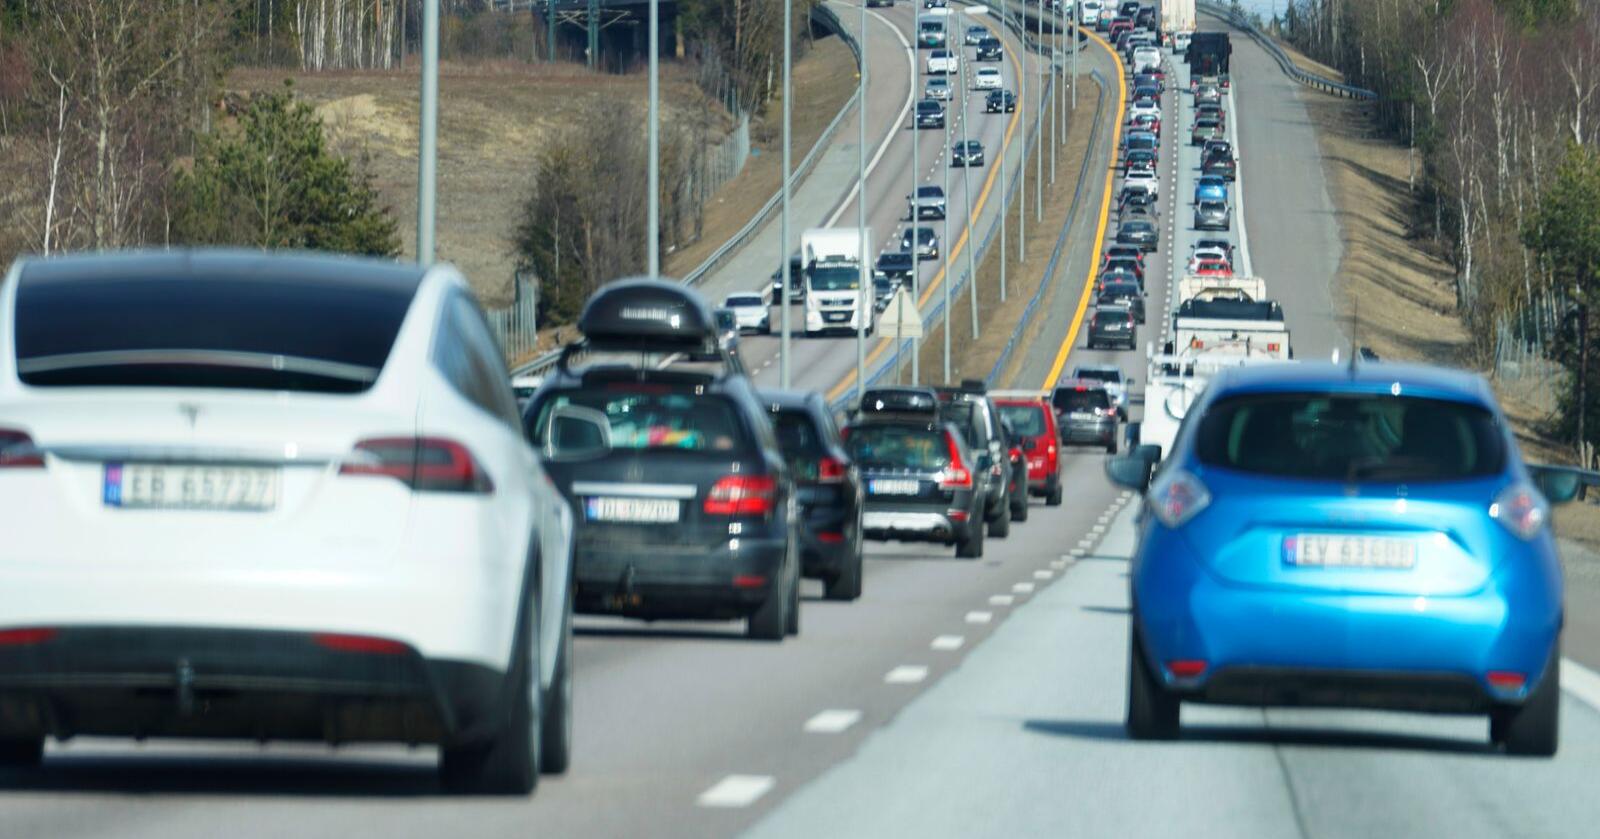 Går feil vei: Norske klimagassutslipp må drastisk nedover, men innenfor veitrafikk og transport økte utslippene med 3,8 prosent i fjor. Foto: Heiko Junge / NTB